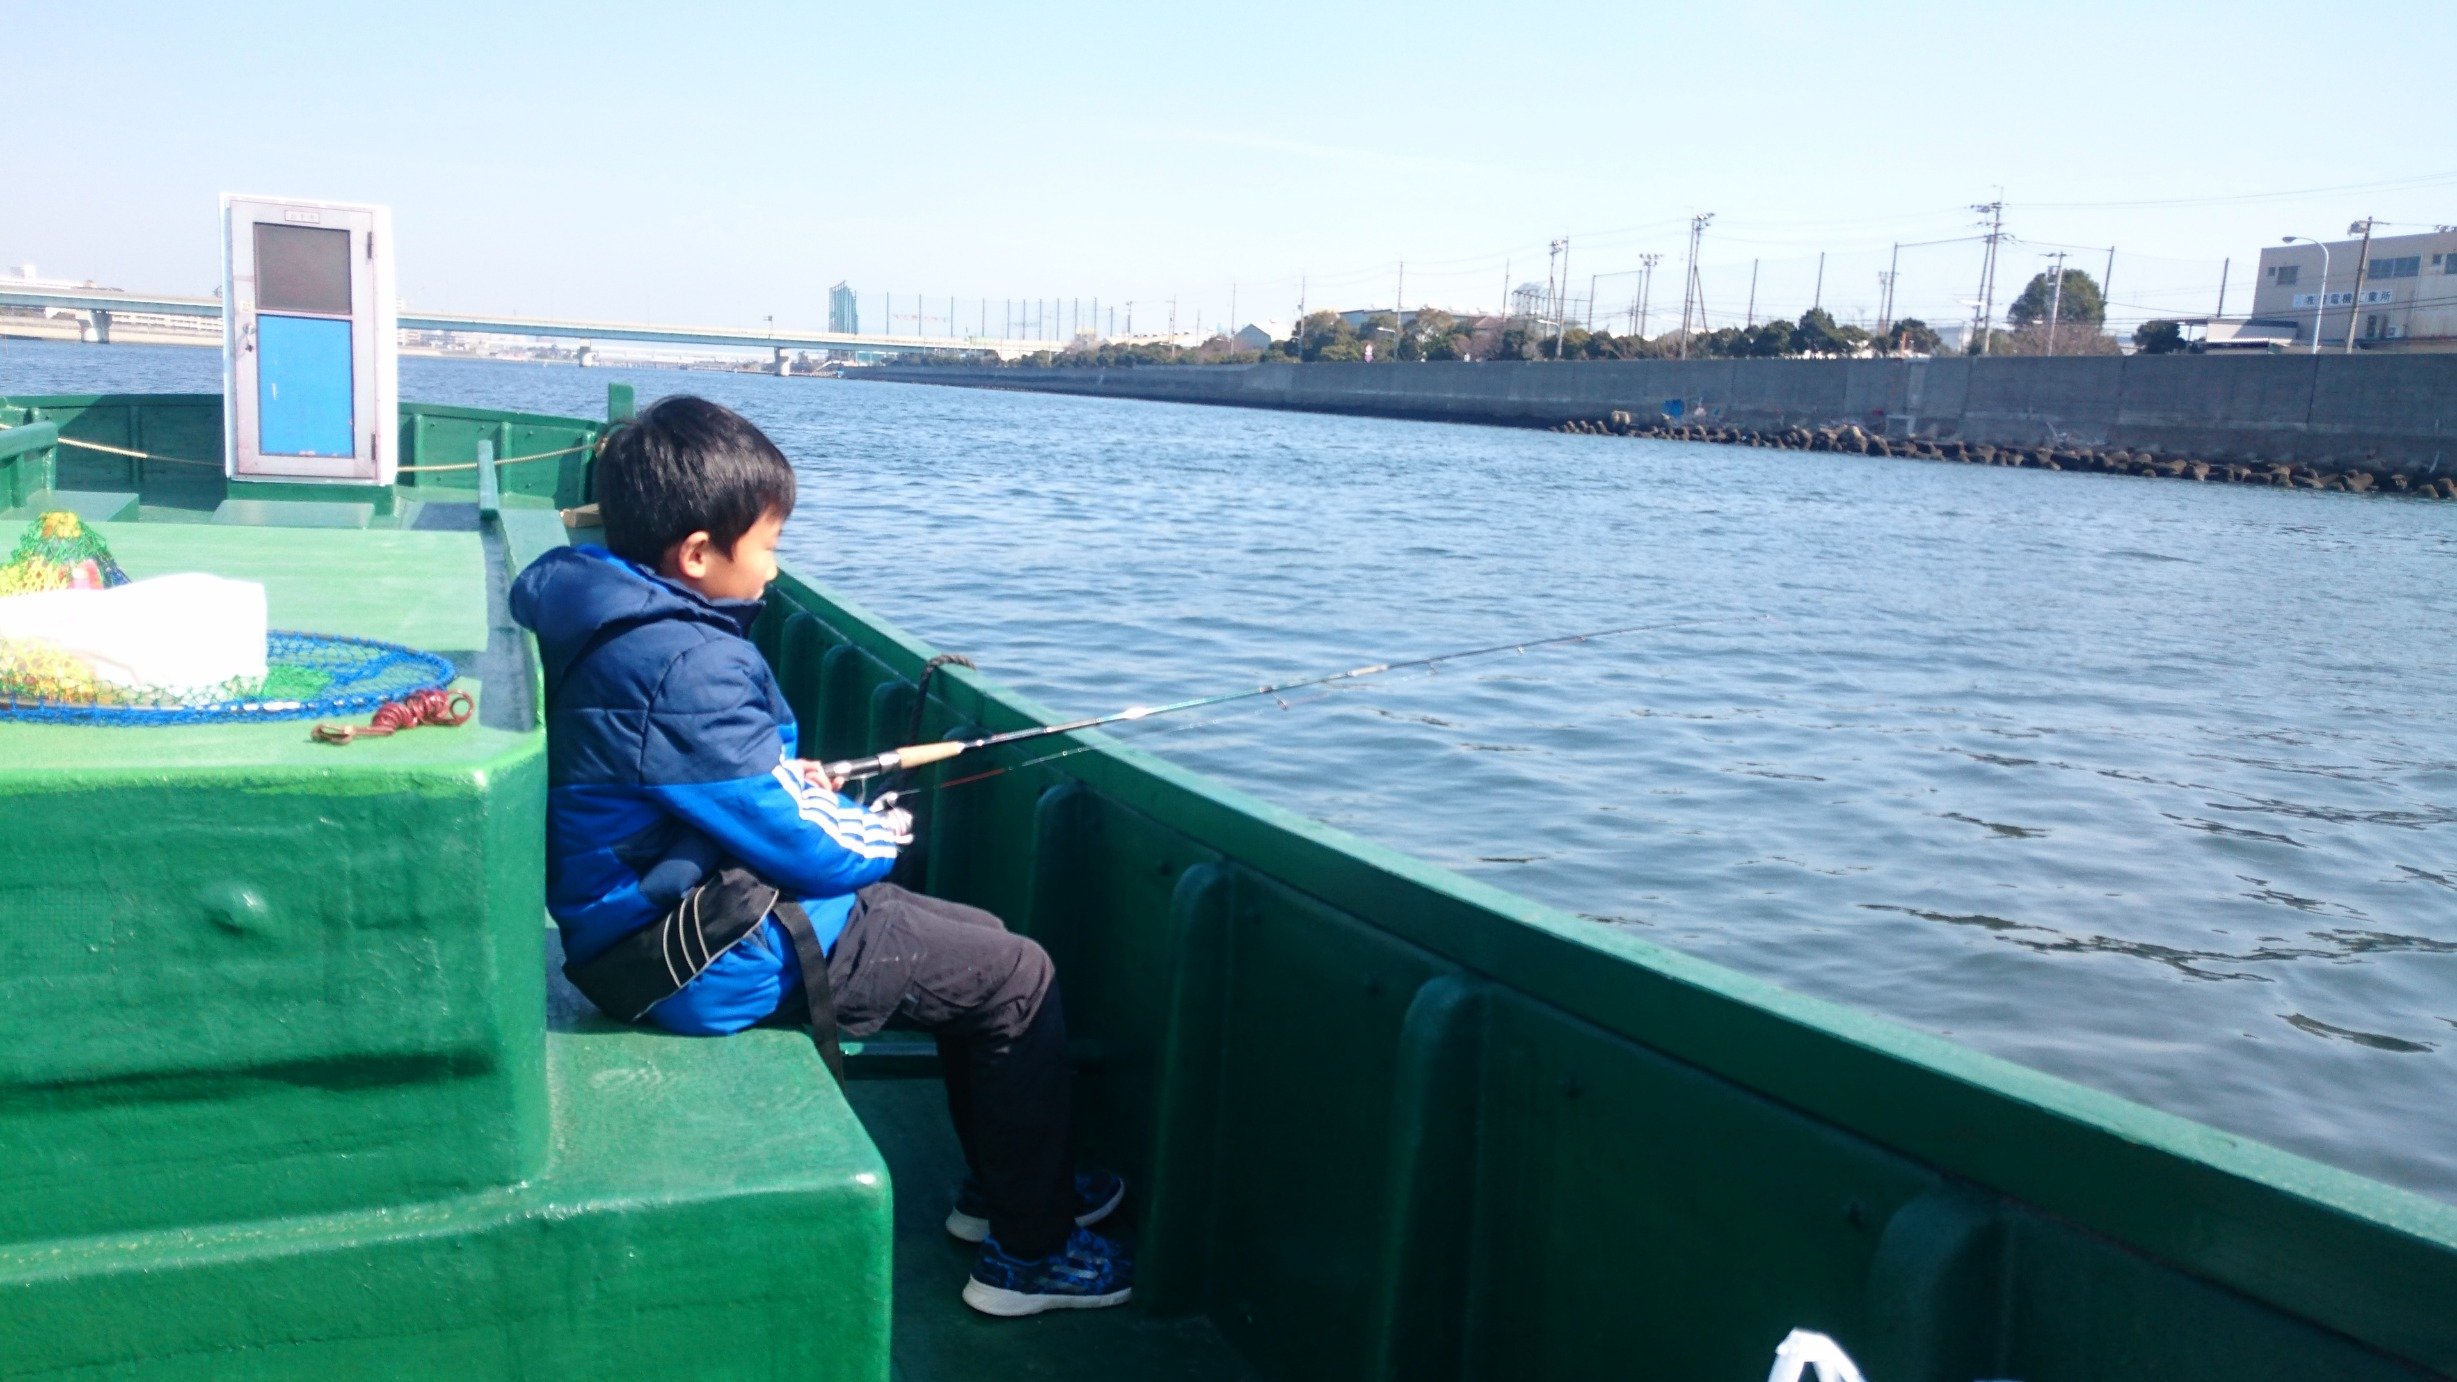 武庫川河口、武庫川一文字への渡船とカセ釣りはお任せ下さい☺ ツイッターでは今釣れてたタナや釣果速報をお伝えしていきます❗